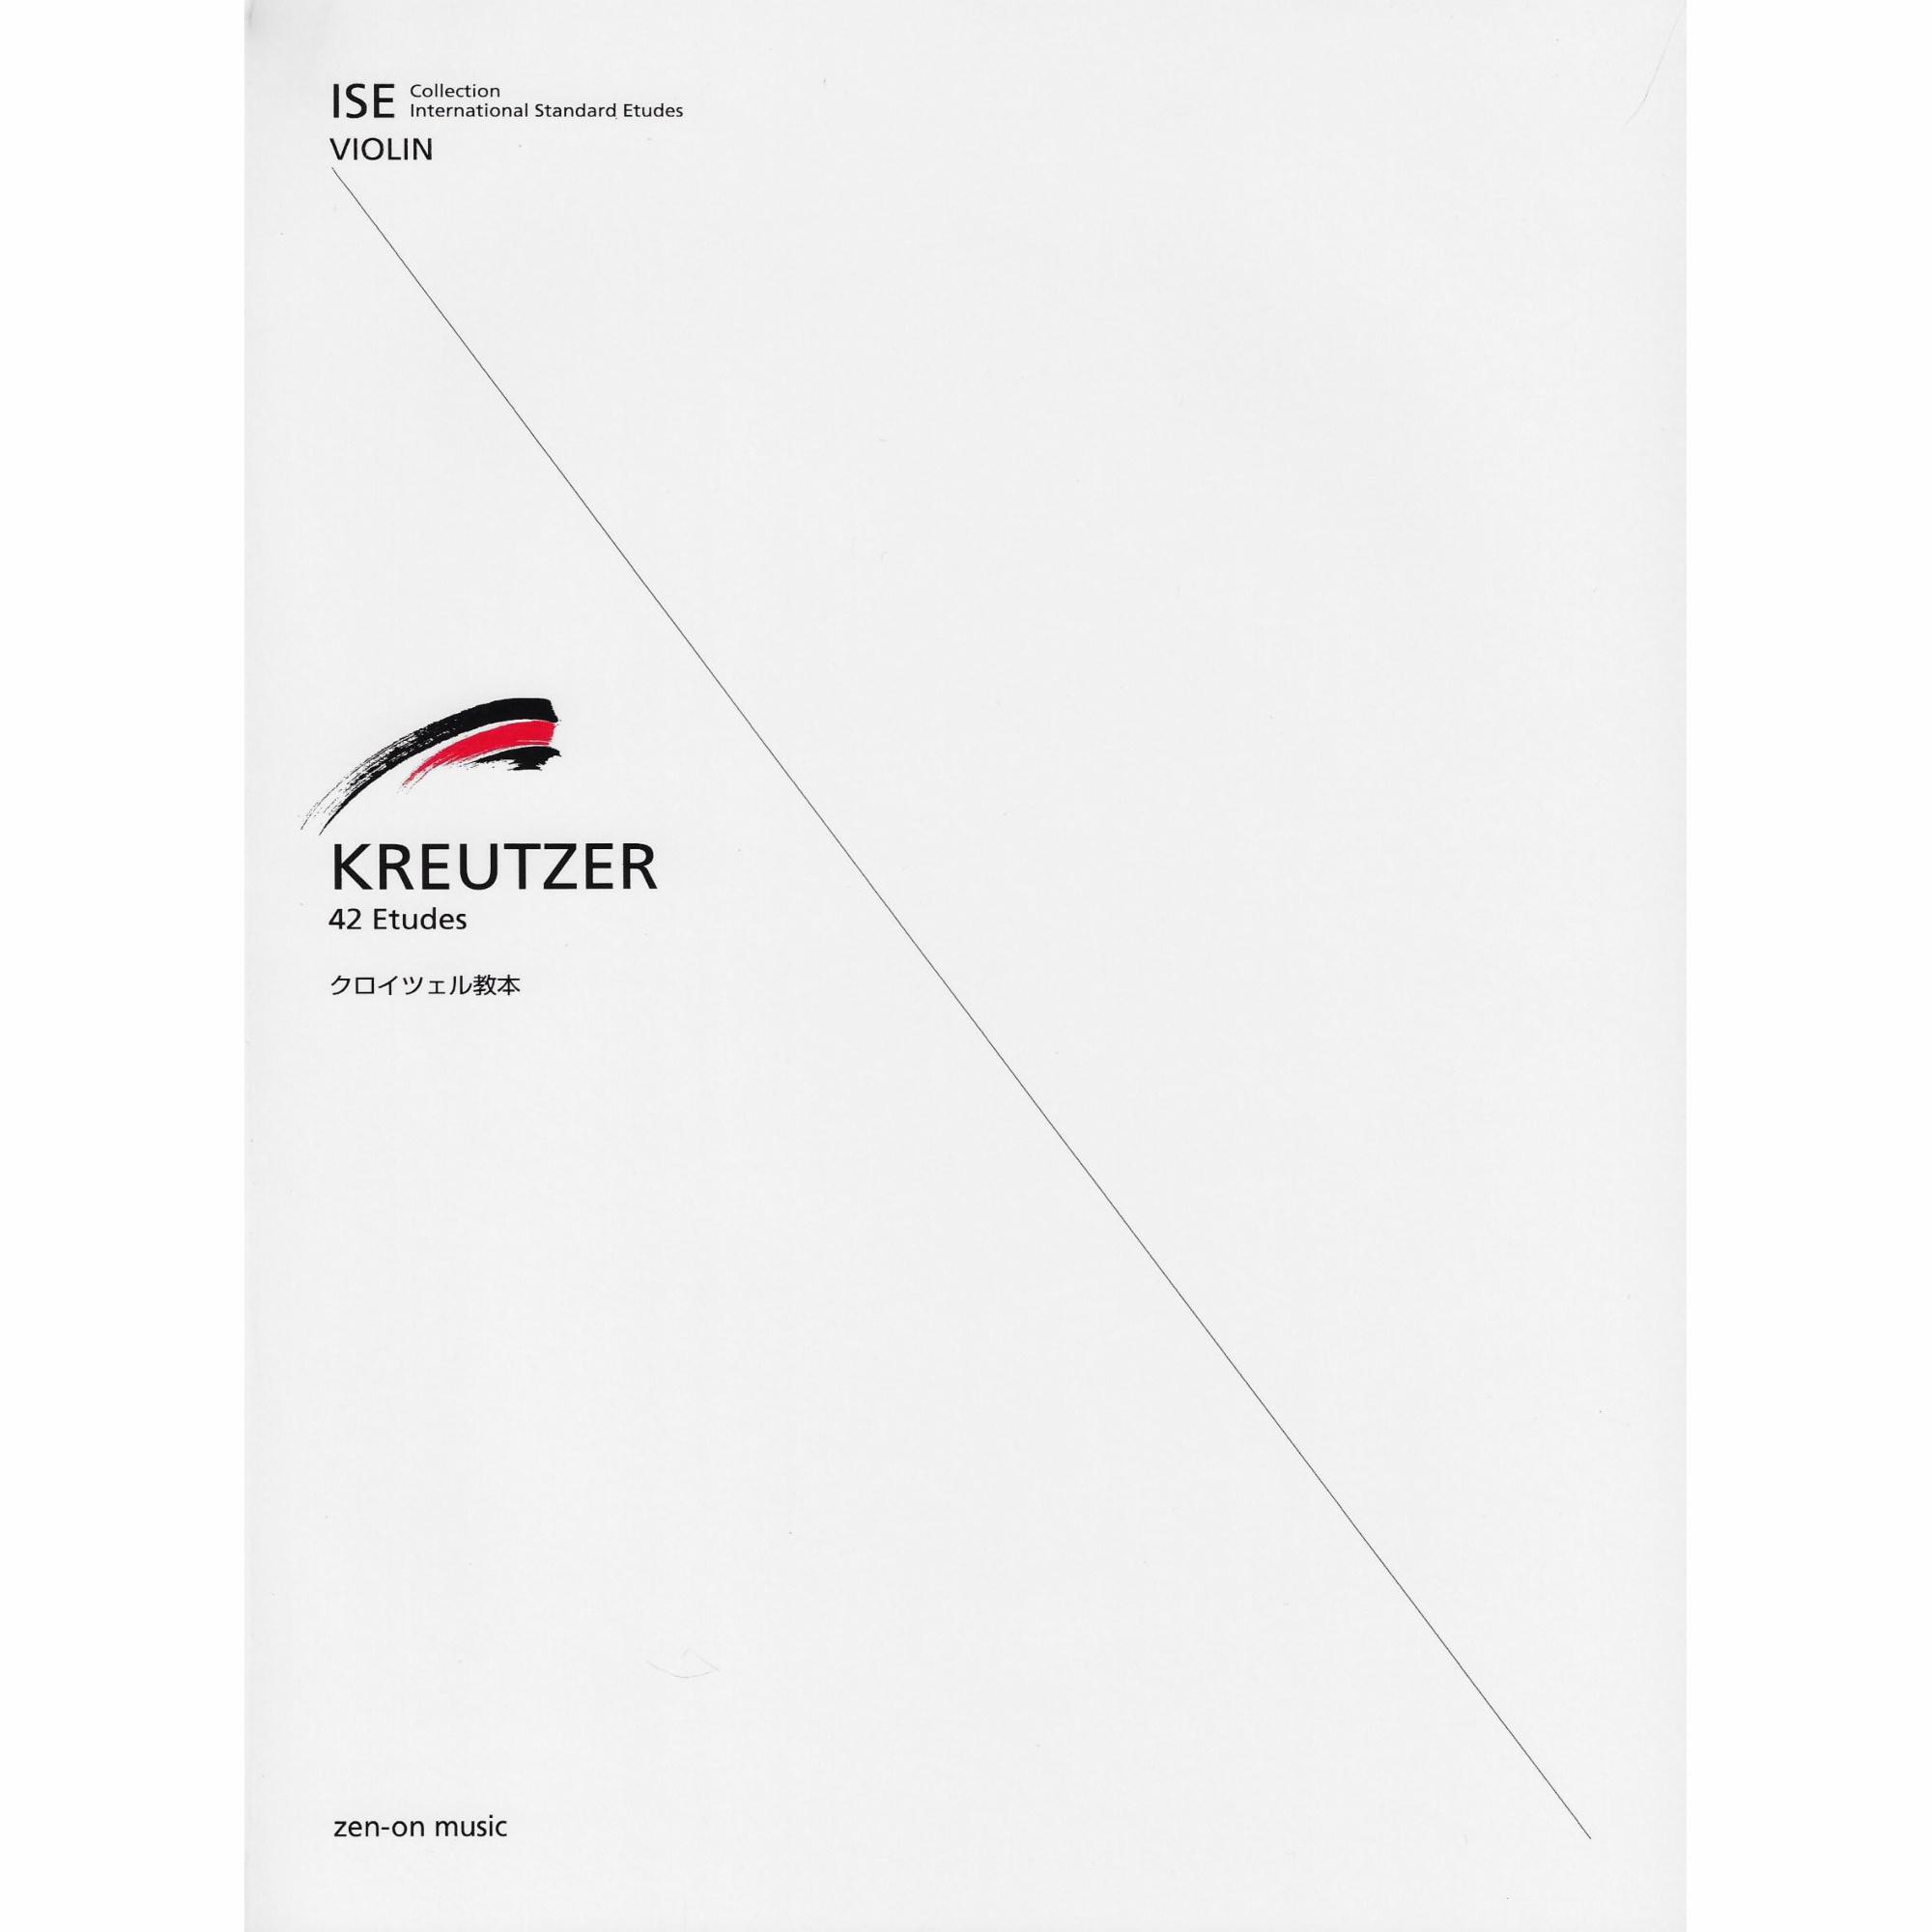 Kreutzer -- 42 Etudes for Violin